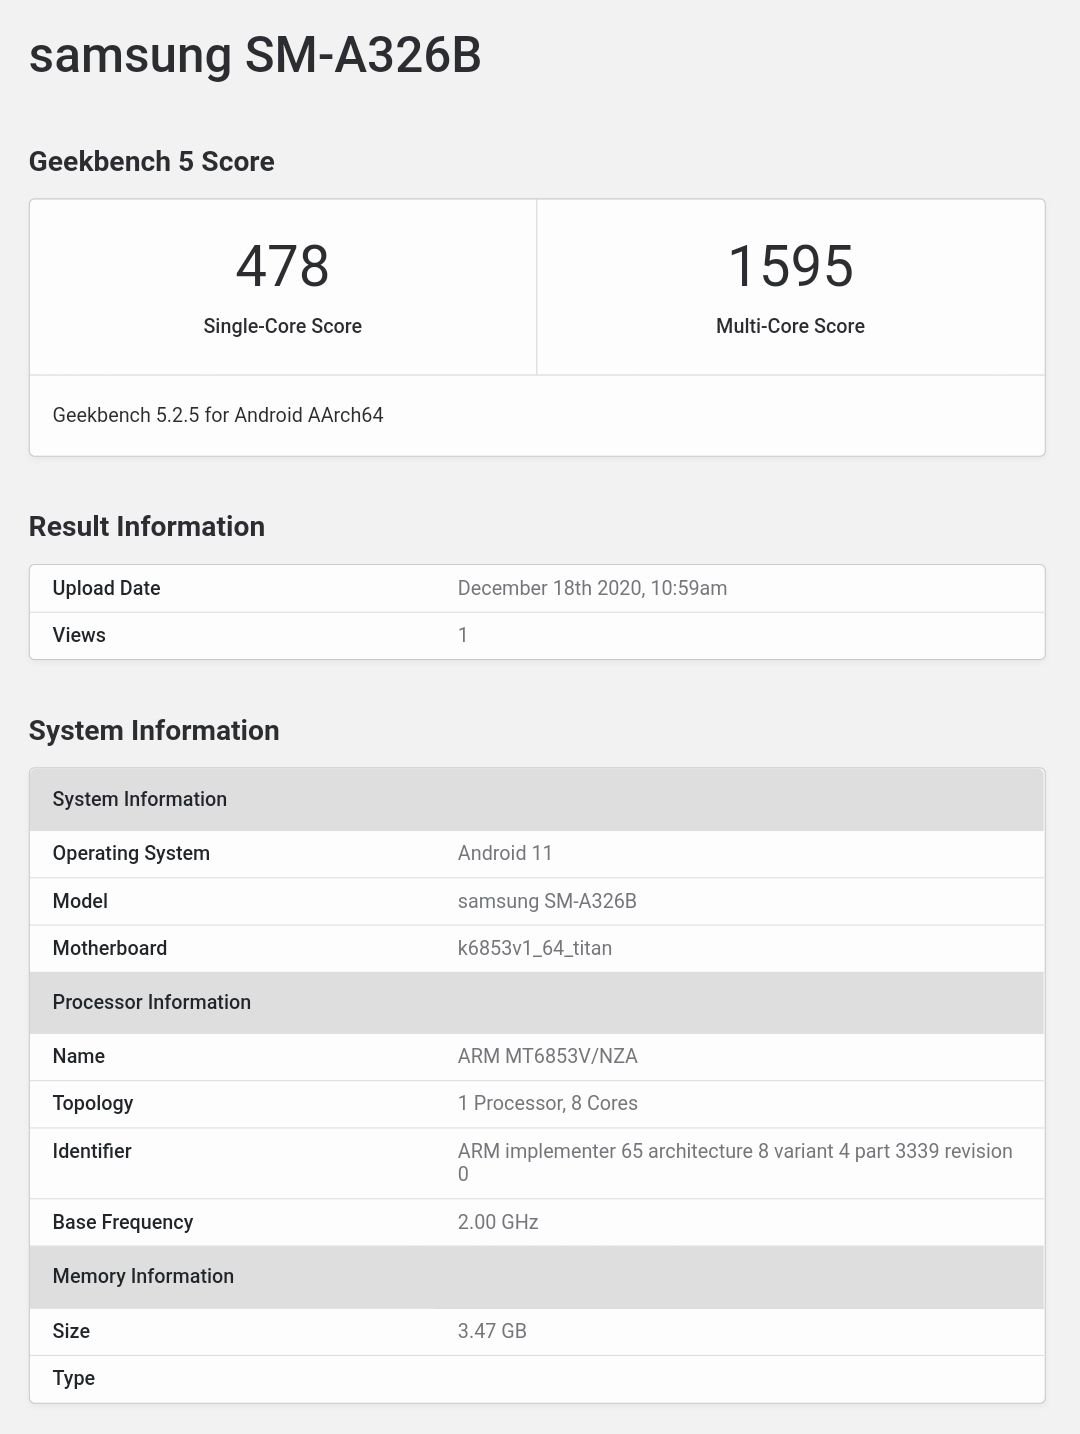 Samsung Galaxy A32 5G mat Dimensity 720 an Android 11 OS erschéngen op Geekbench